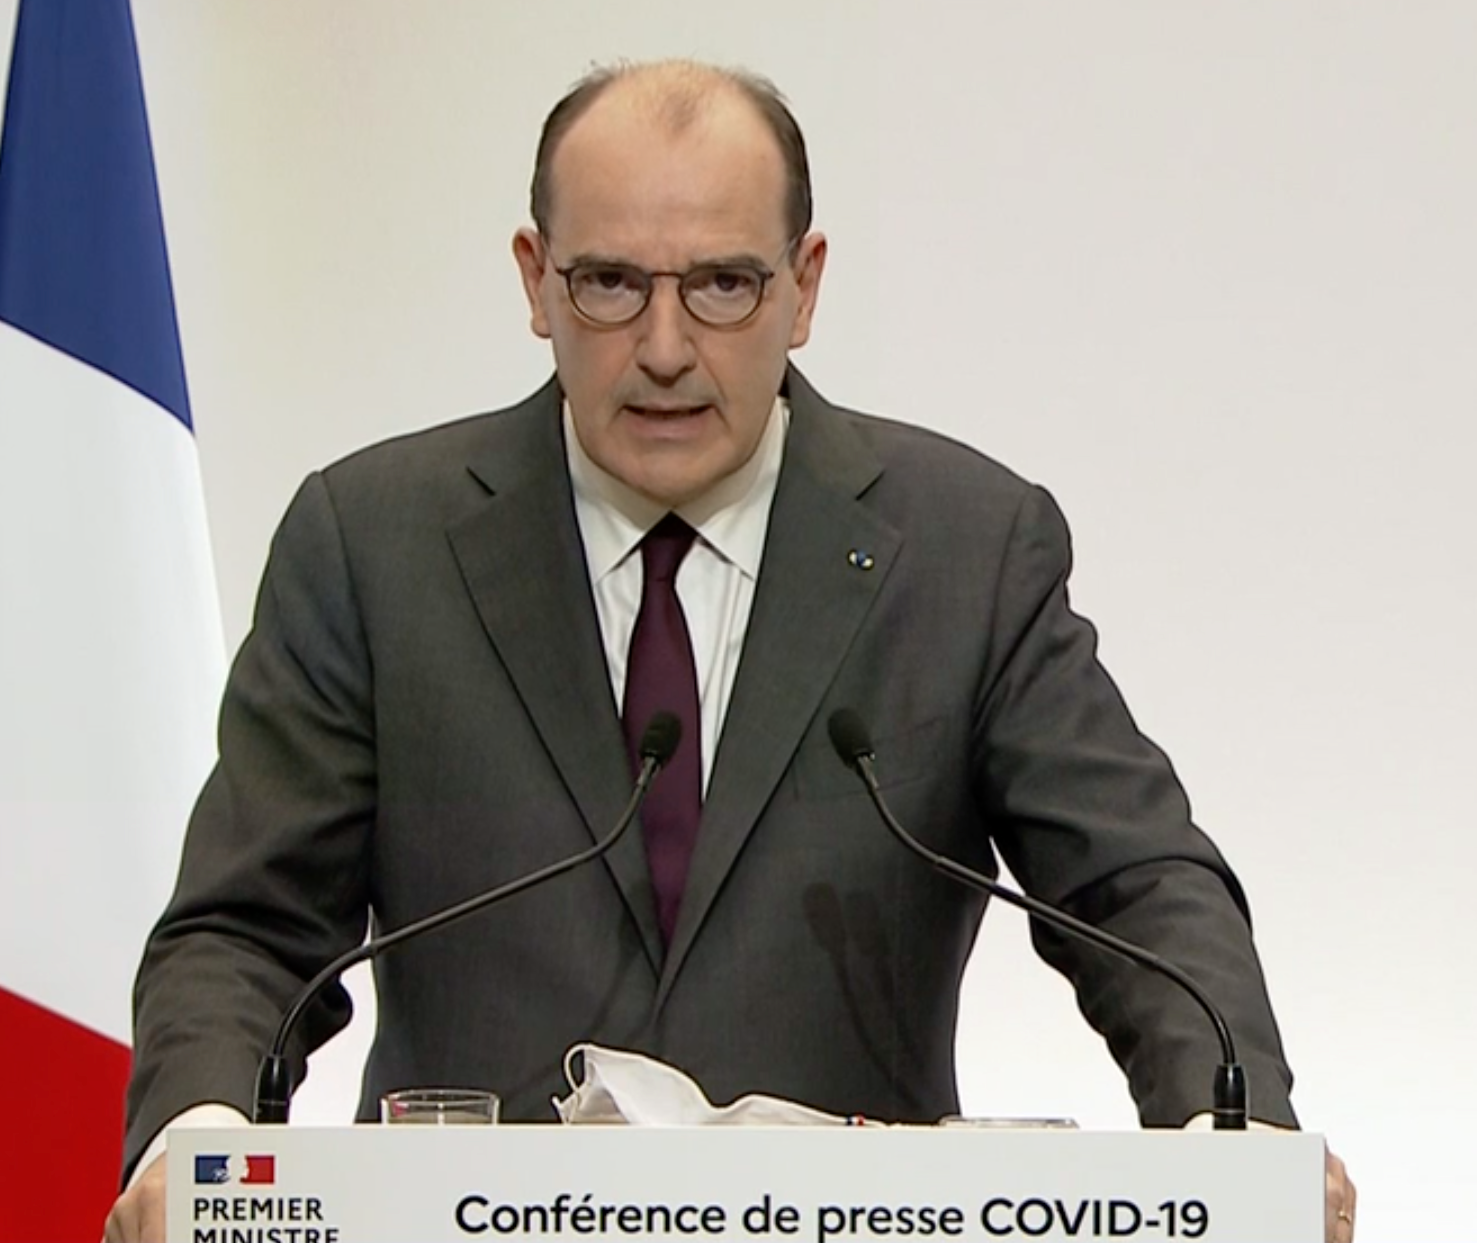 Le Premier ministre Jean Castex appelle les Français à faire preuve de responsabilité individuelle - Crédit : Capture d'écran